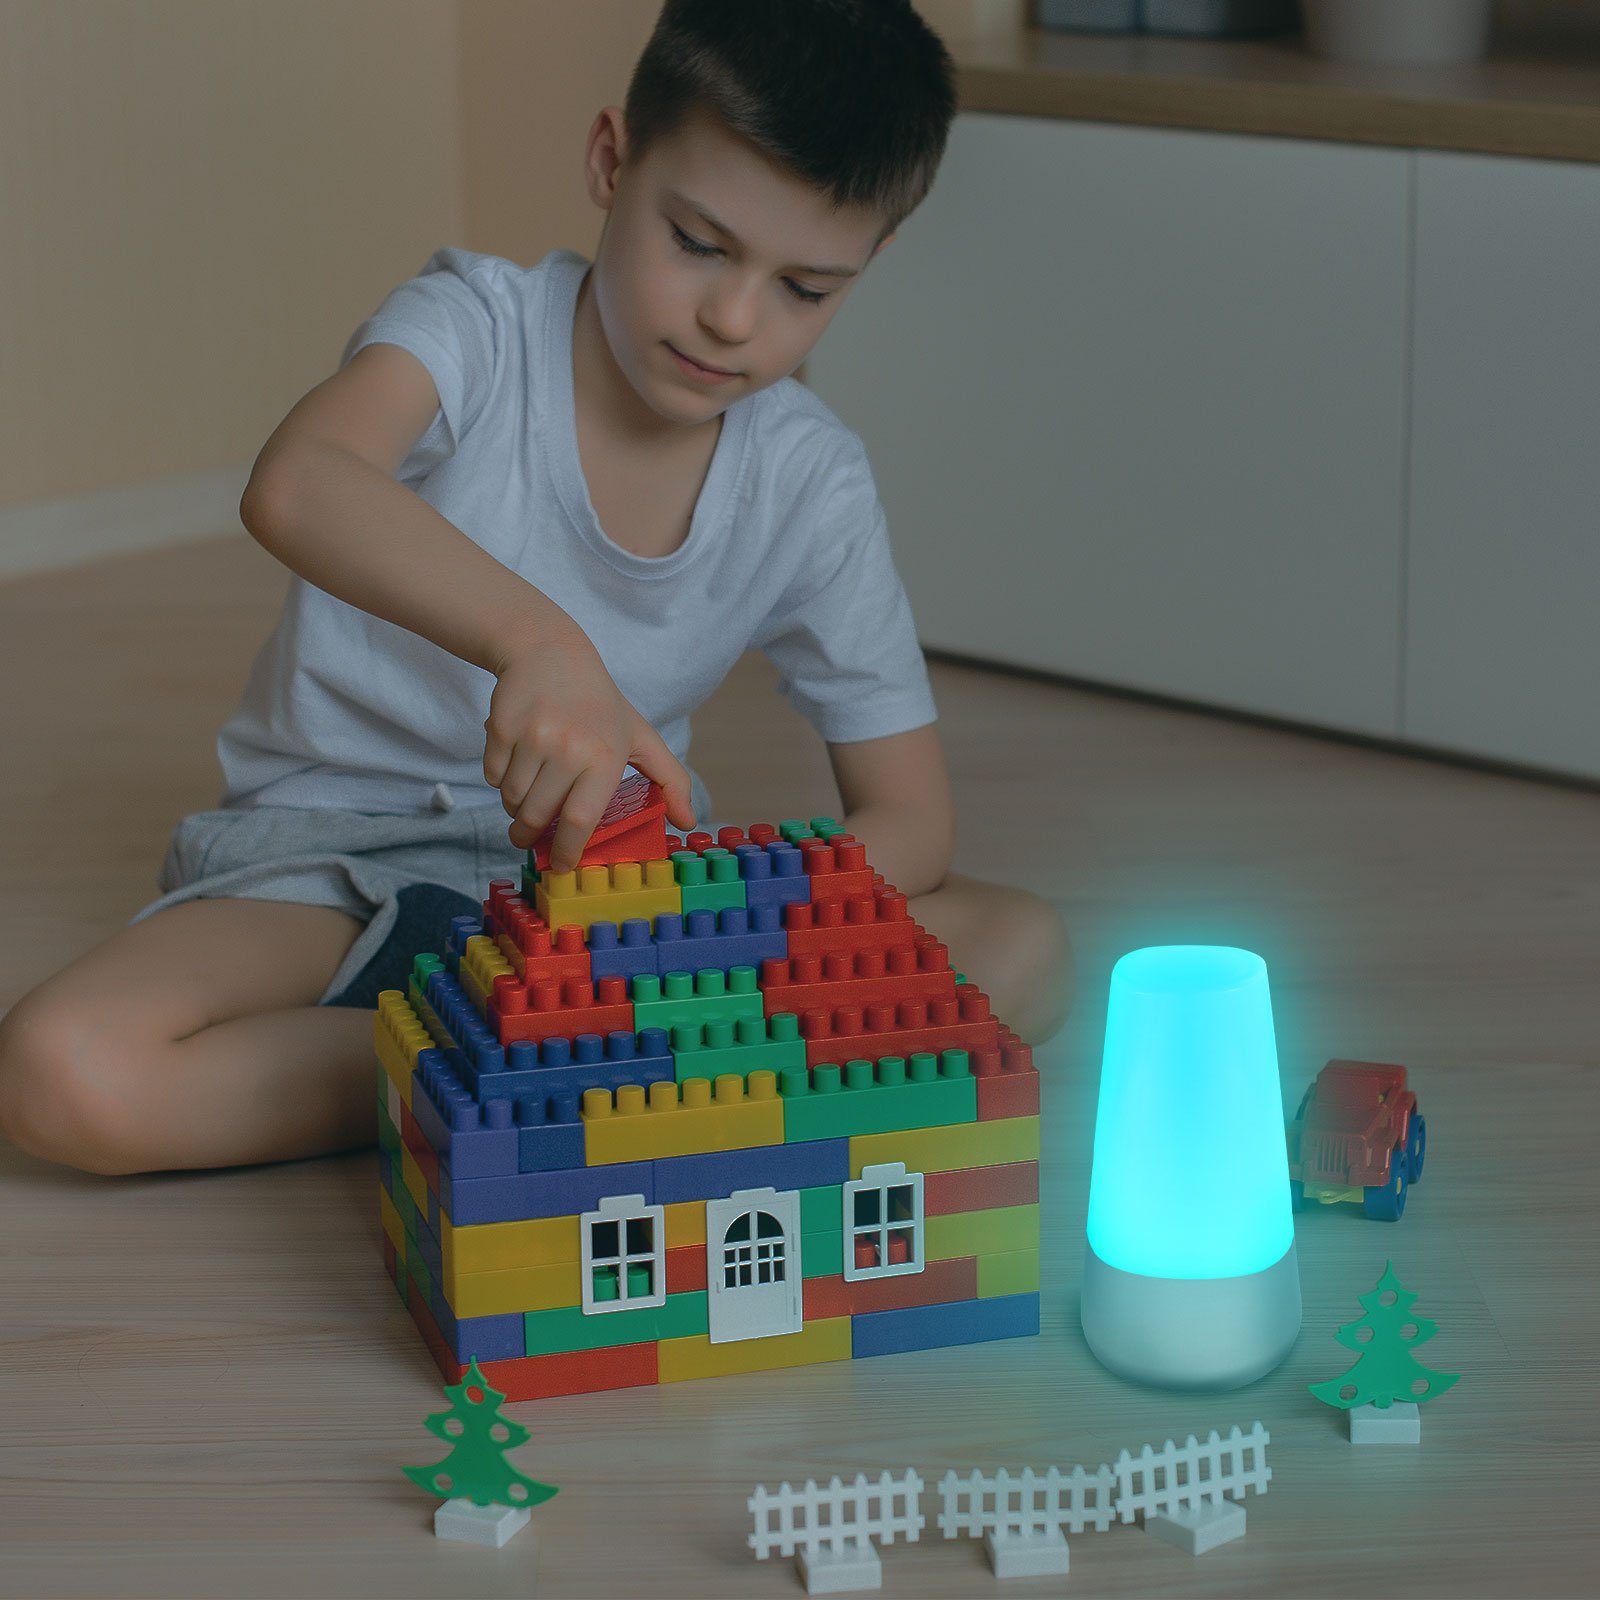 Stimmungslicht LED LED Wunderschöne EAXUS - RGB-Farbwechsel, integriert, fest RGB-Farbwechsel, Farbenpracht, Tischleuchte Nachtlicht/Nachttischlampe, Lichtstreuung mit 360°